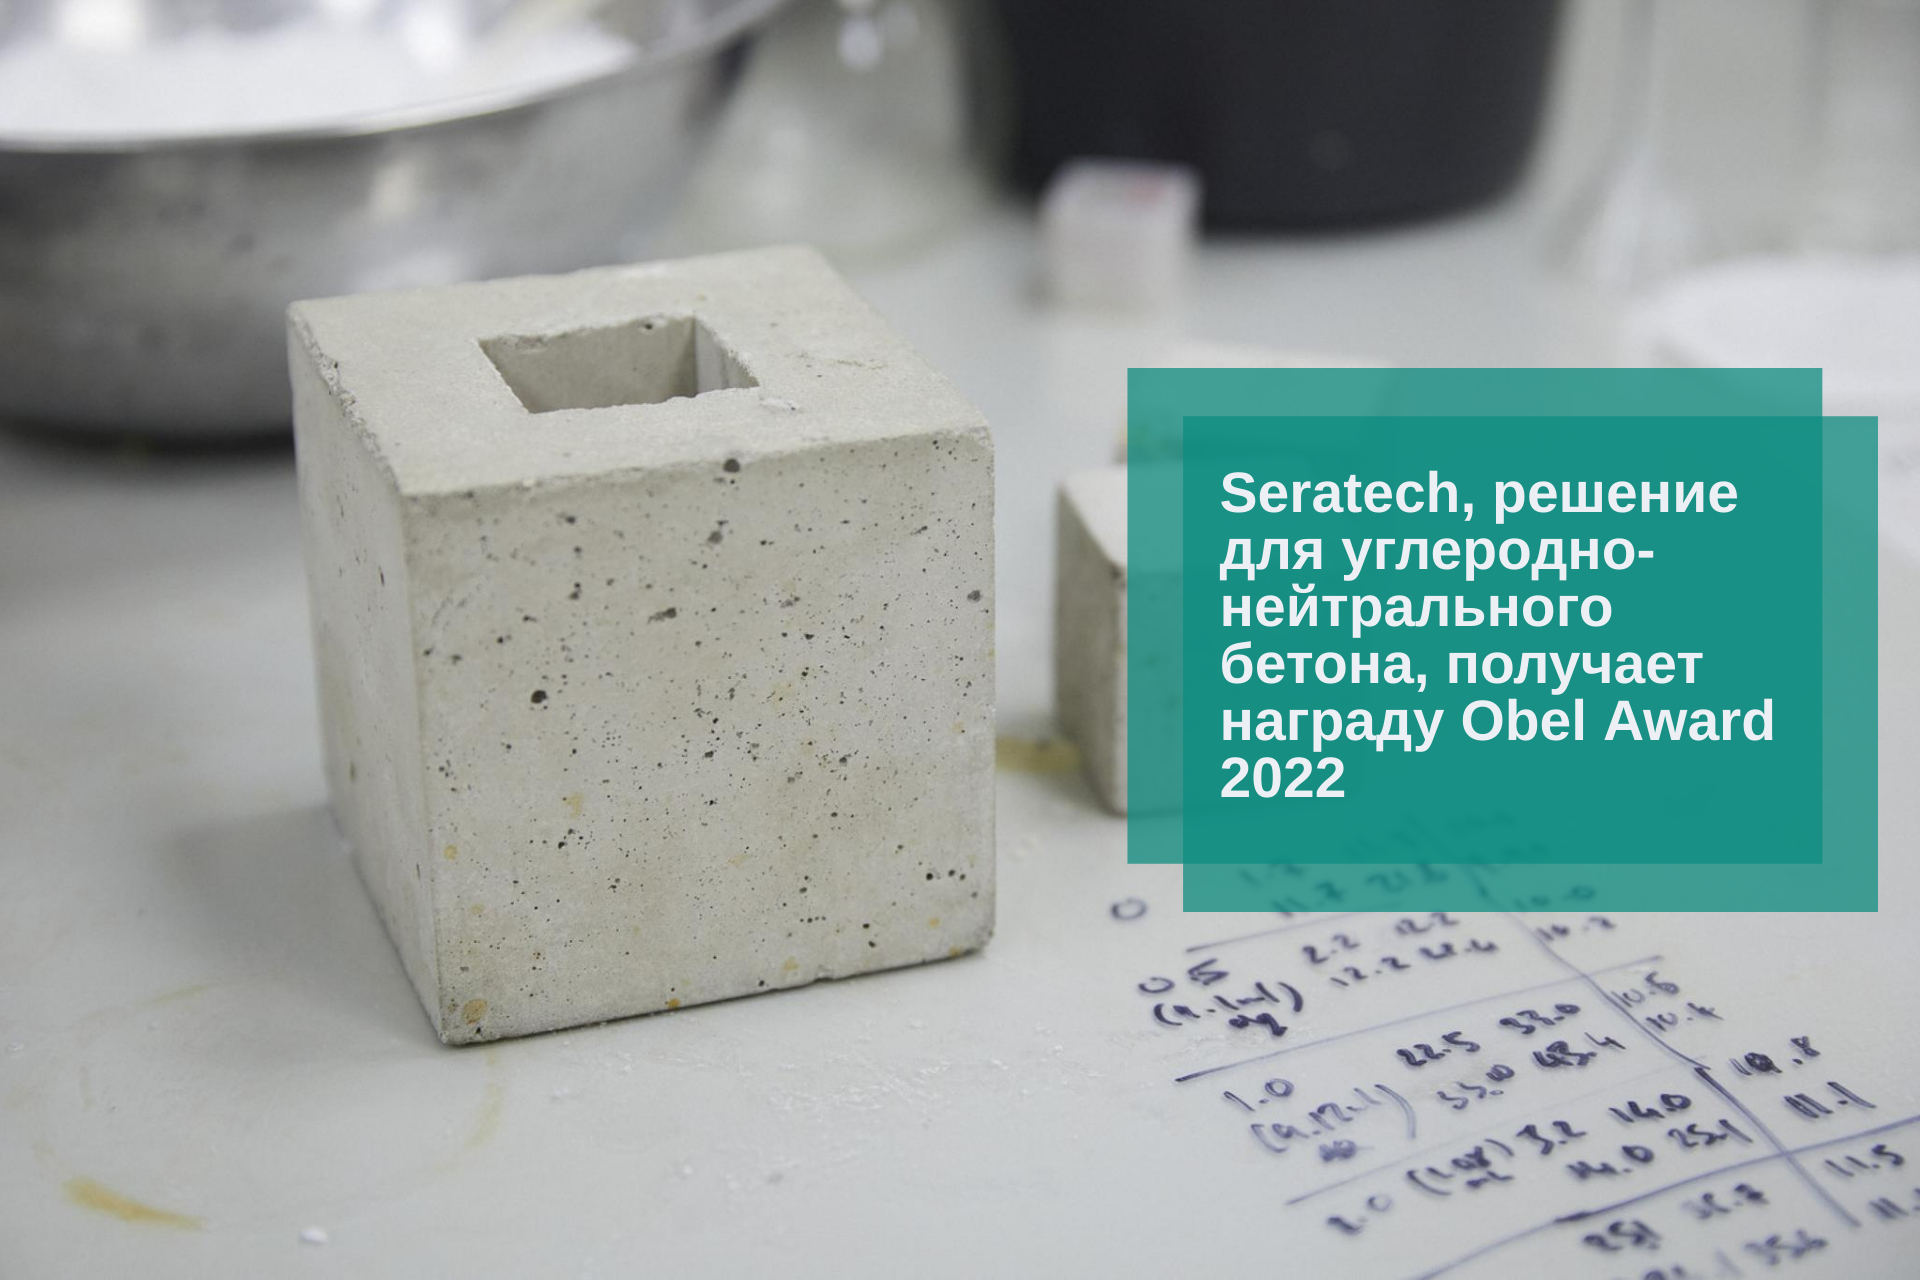 Seratech, решение для углеродно-нейтрального бетона, получает награду Obel Award 2022